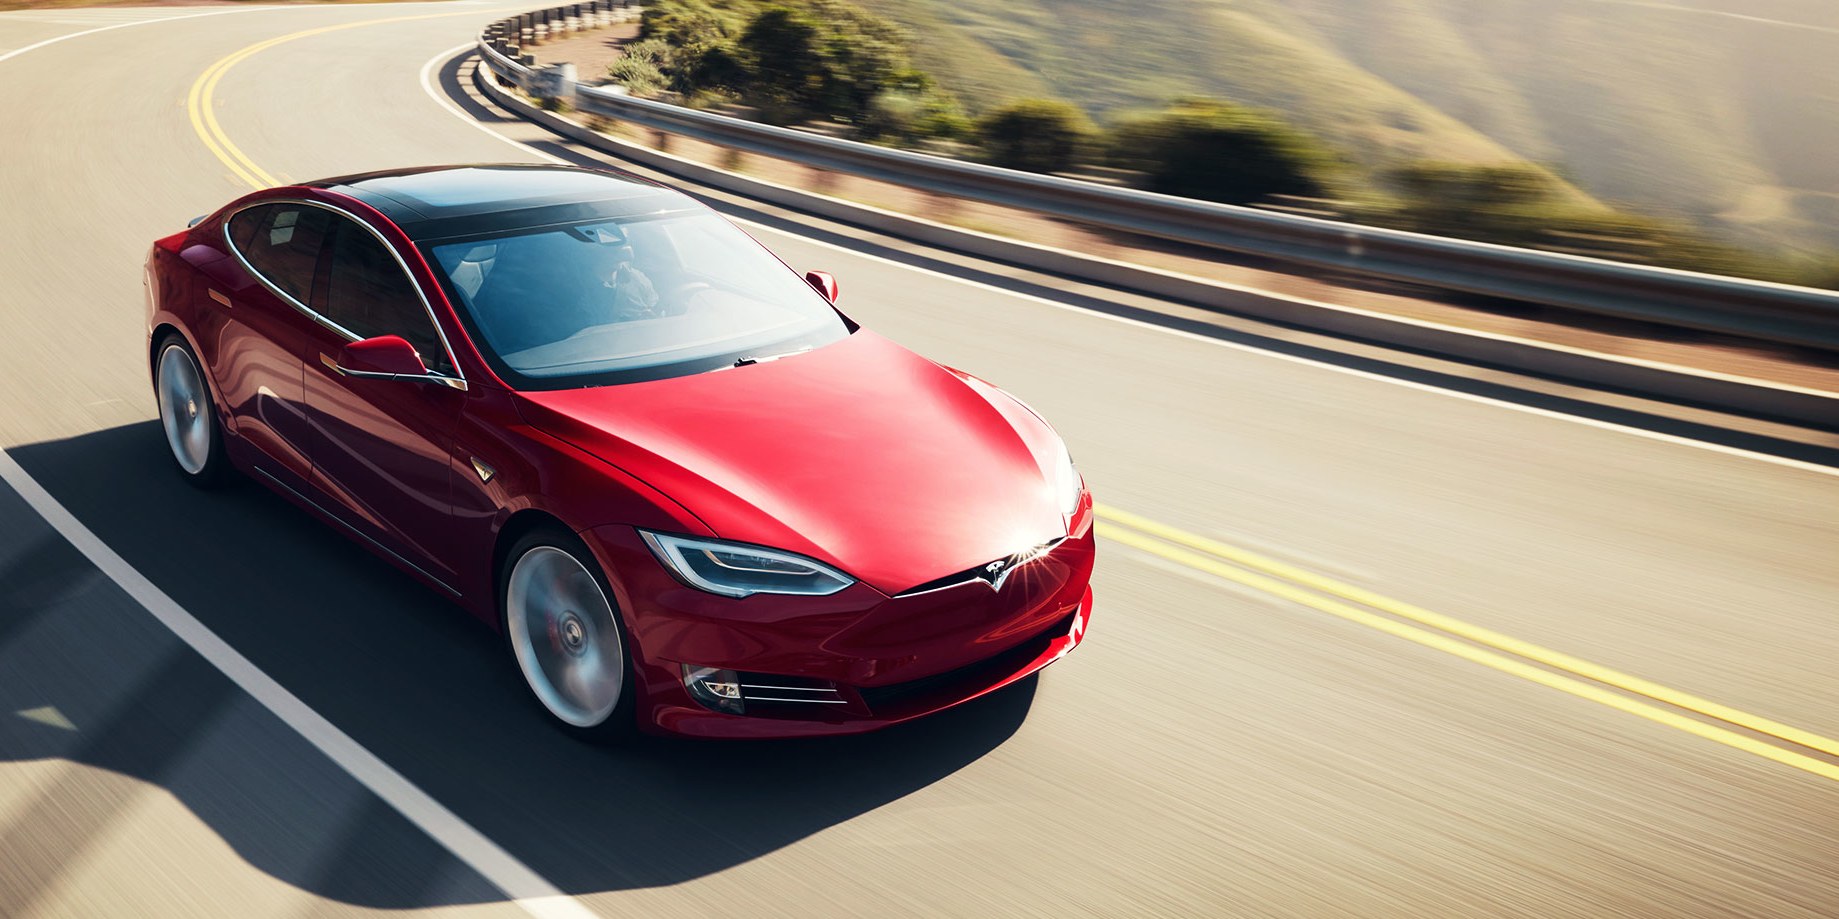 İtfaiye aracına çarpan Model S sürücüsü Autopilot'u suçlayarak Tesla'ya dava açtı